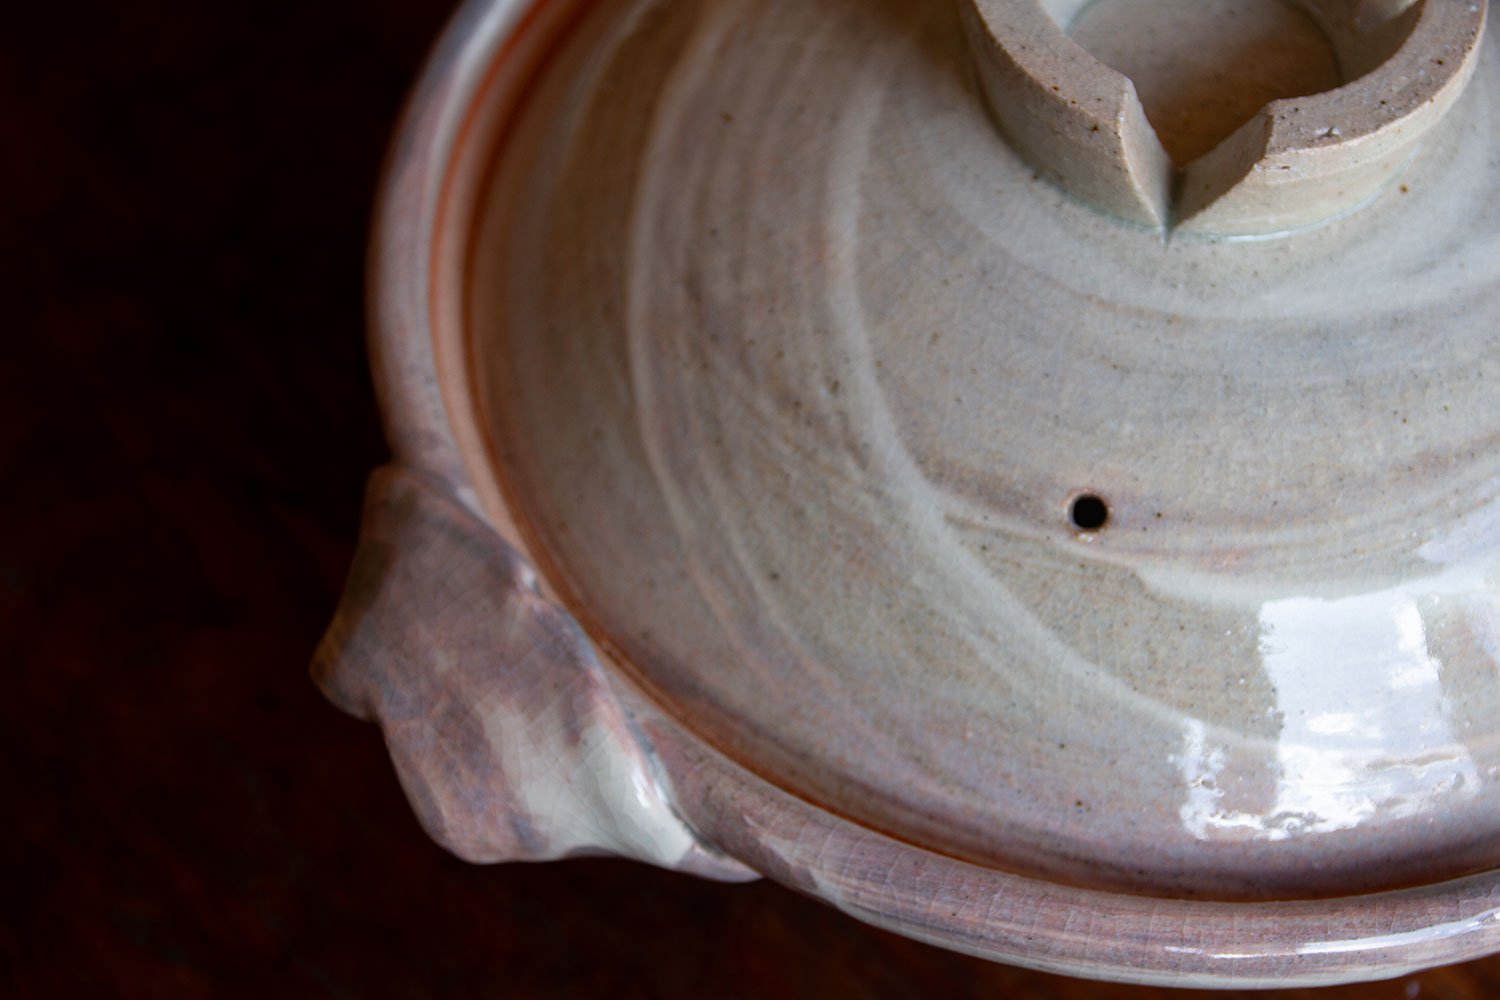 土鍋 - 土楽 | 伊賀の里の土楽窯